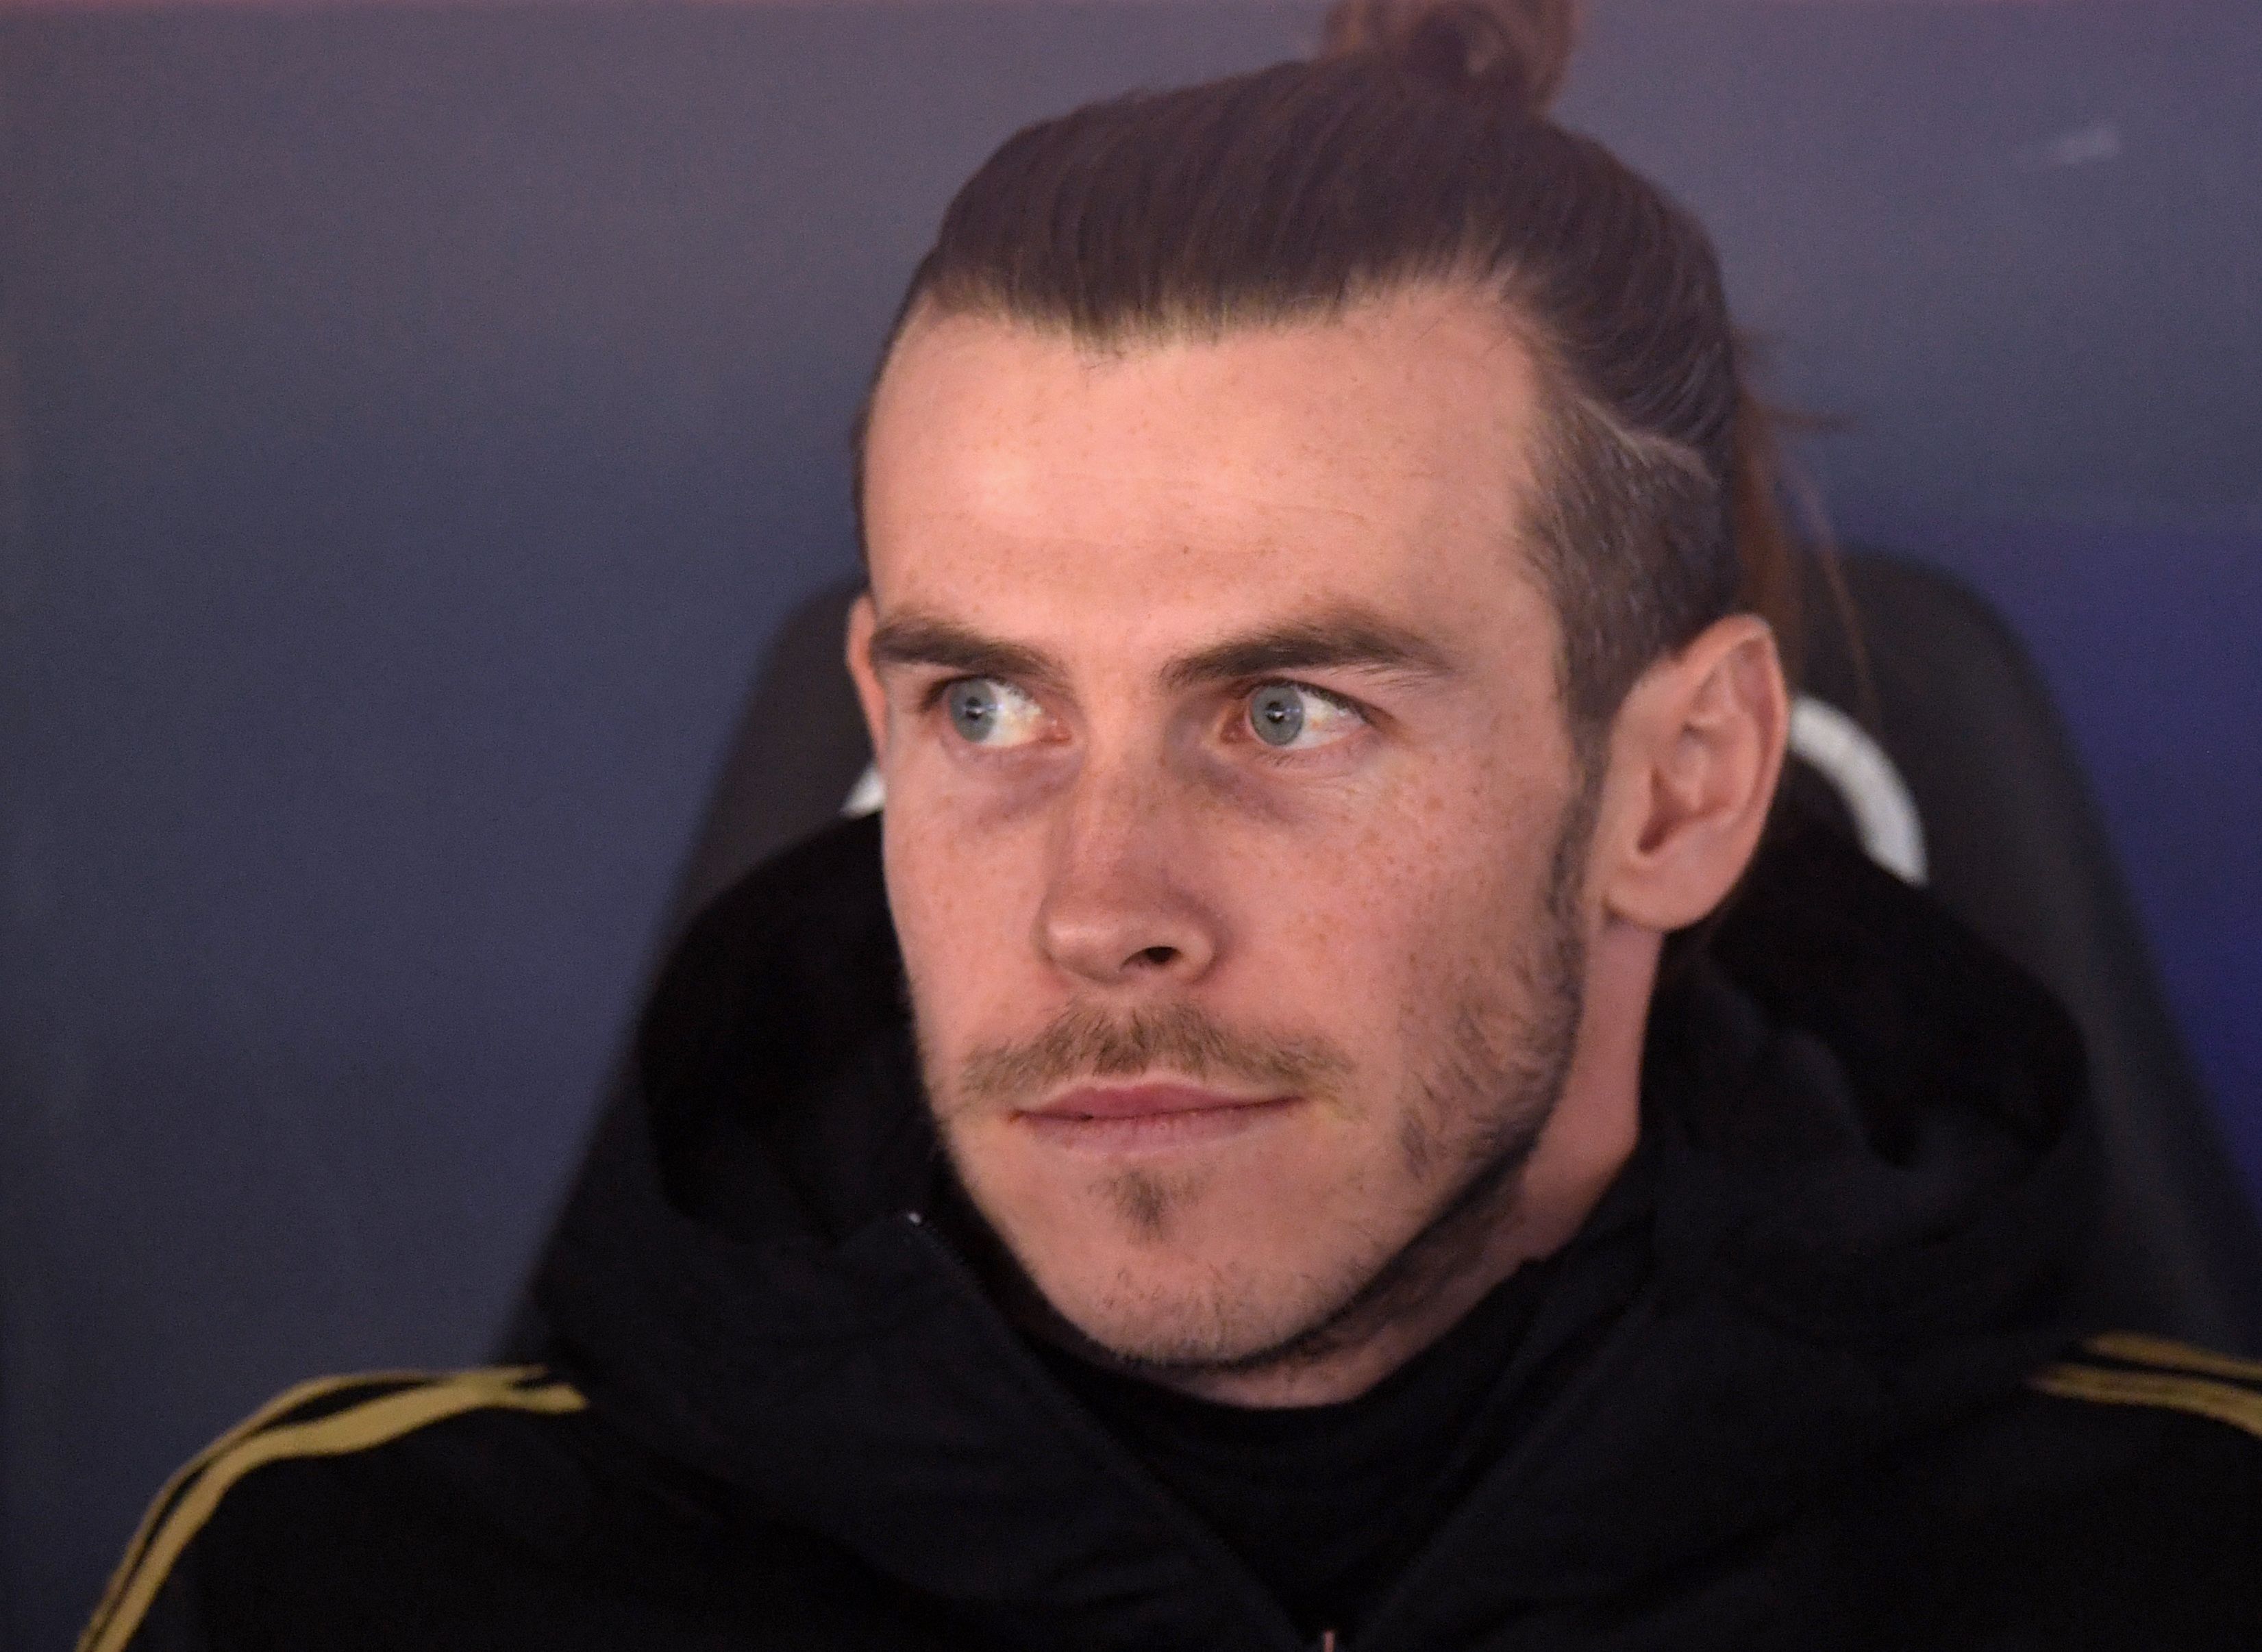 El delantero galés Gareth Bale sigue sin encontrar una motivación en el Real Madrid. (Foto Prensa Libre: AFP)